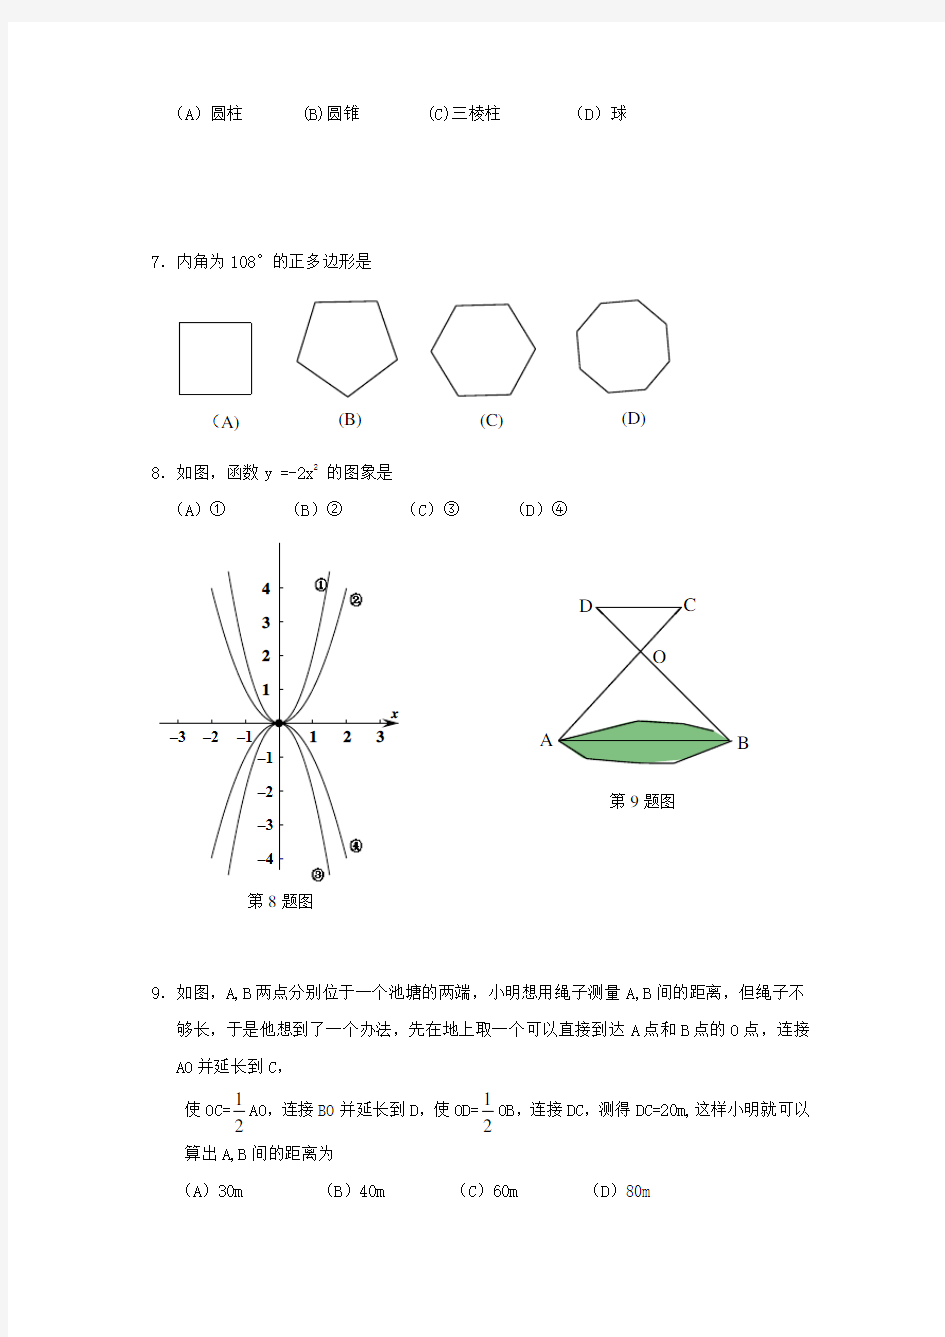 【2020年】北京市中考数学模拟试题(含答案)